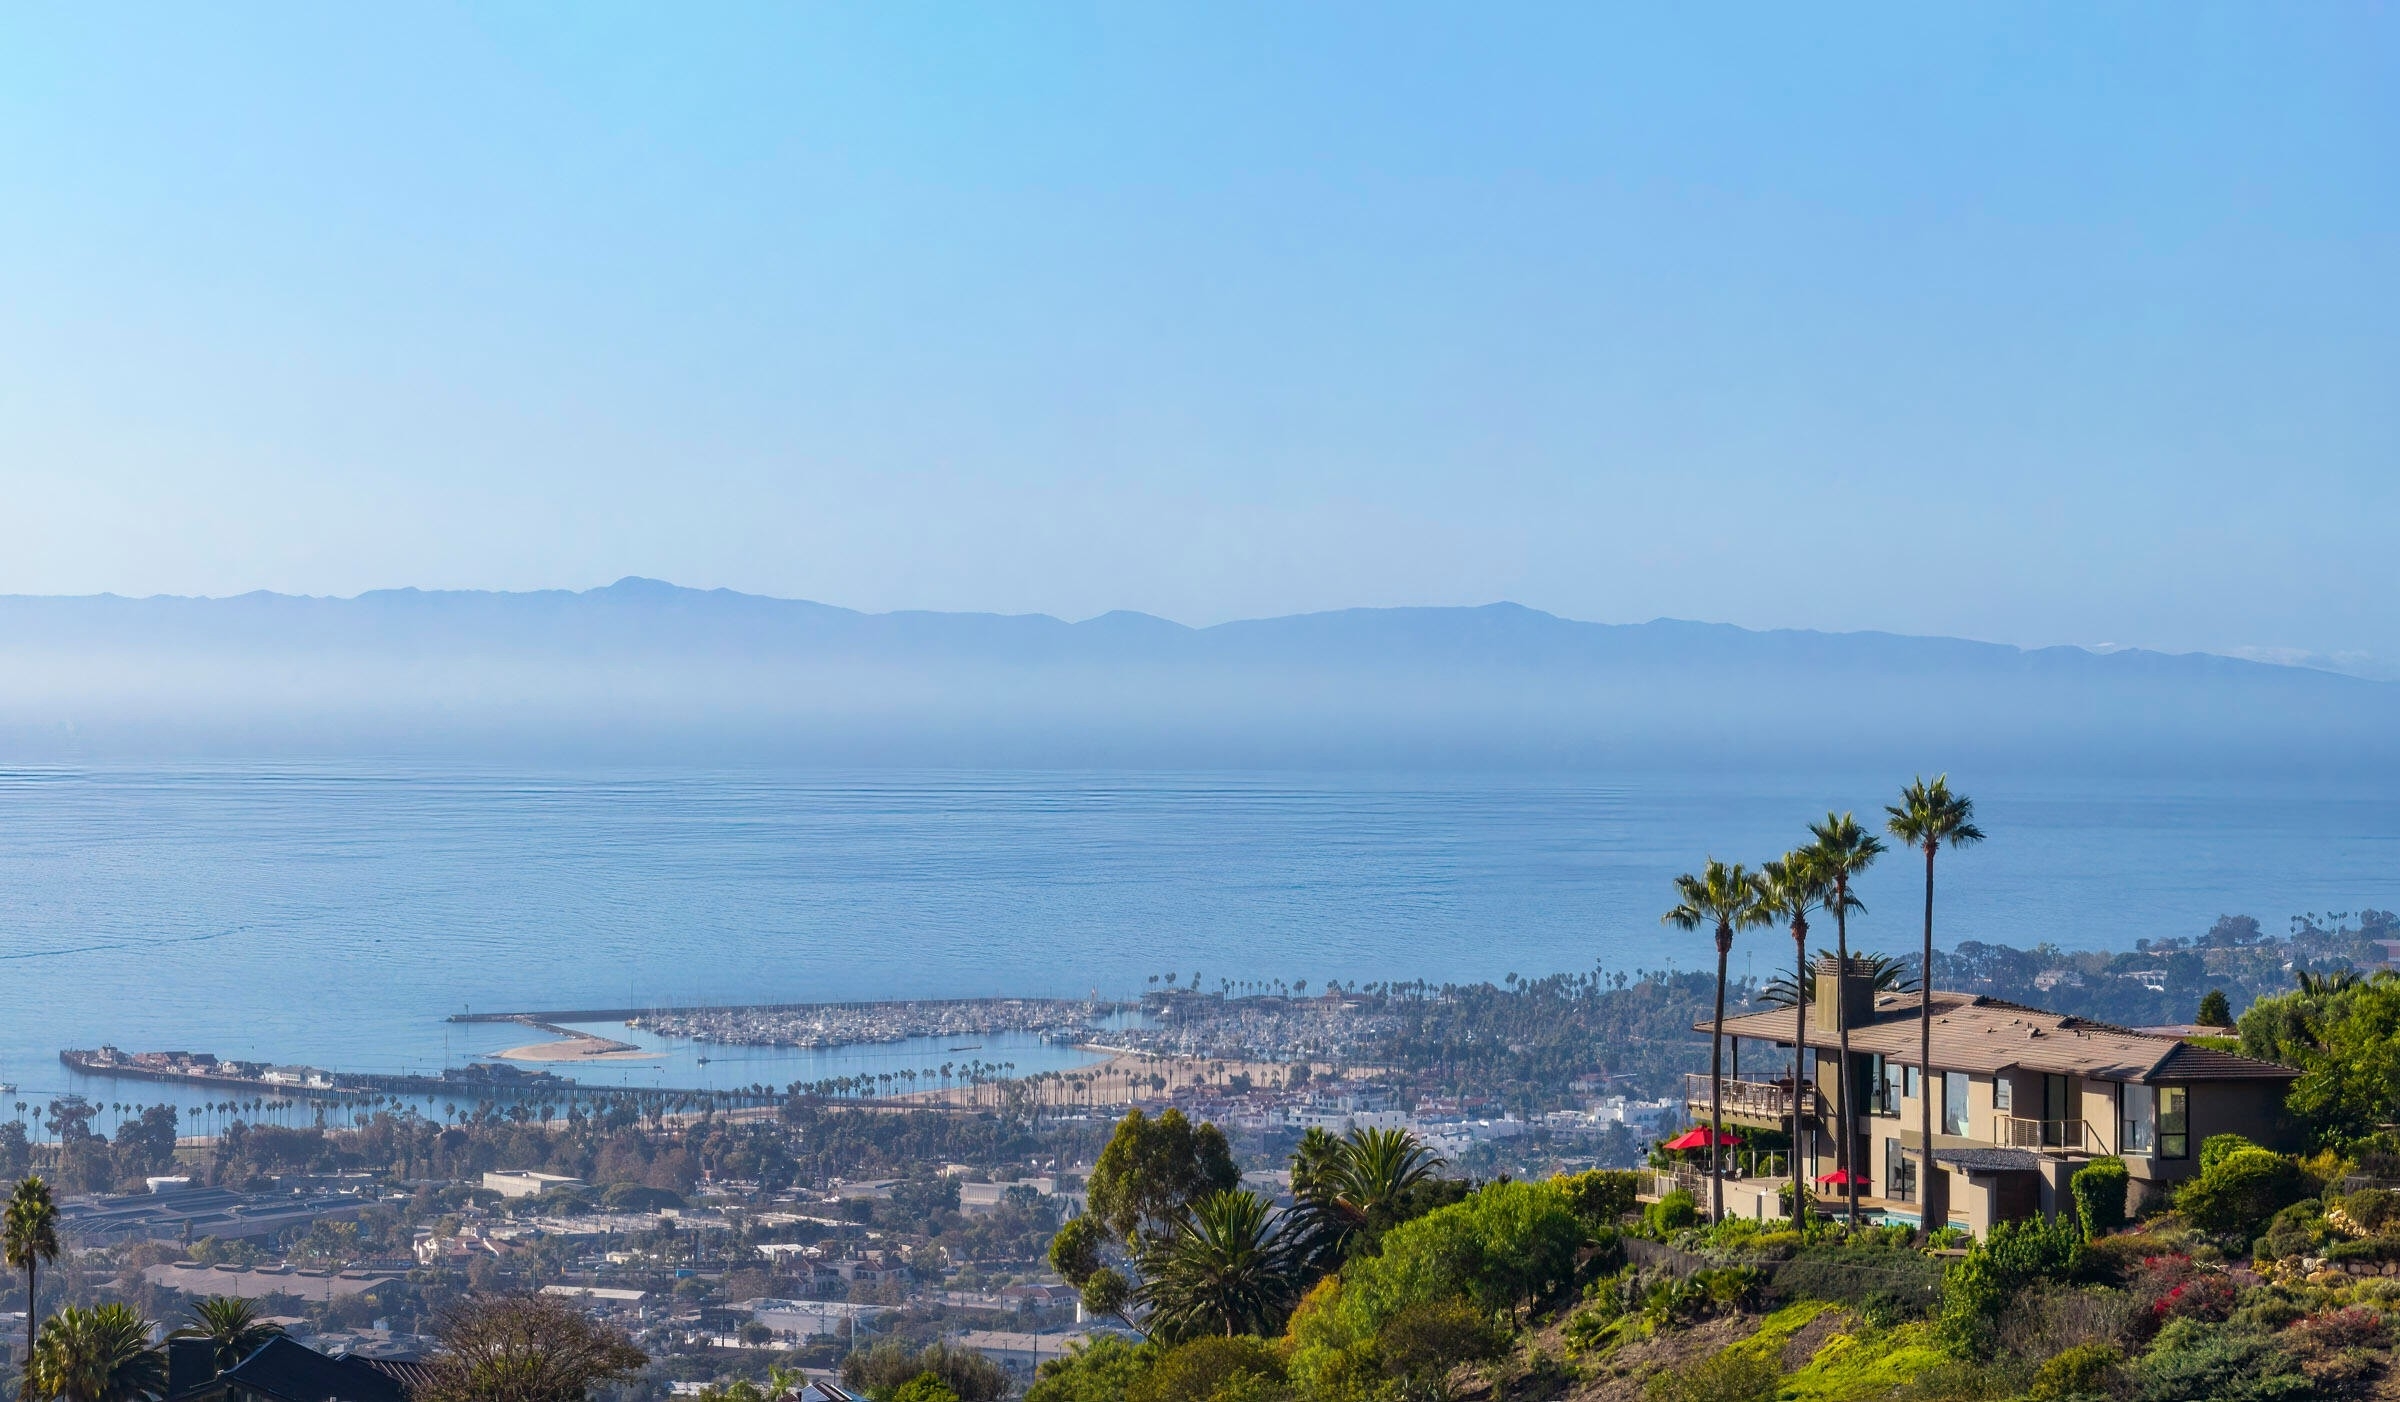 Property at Riviera, Santa Barbara, CA 93103